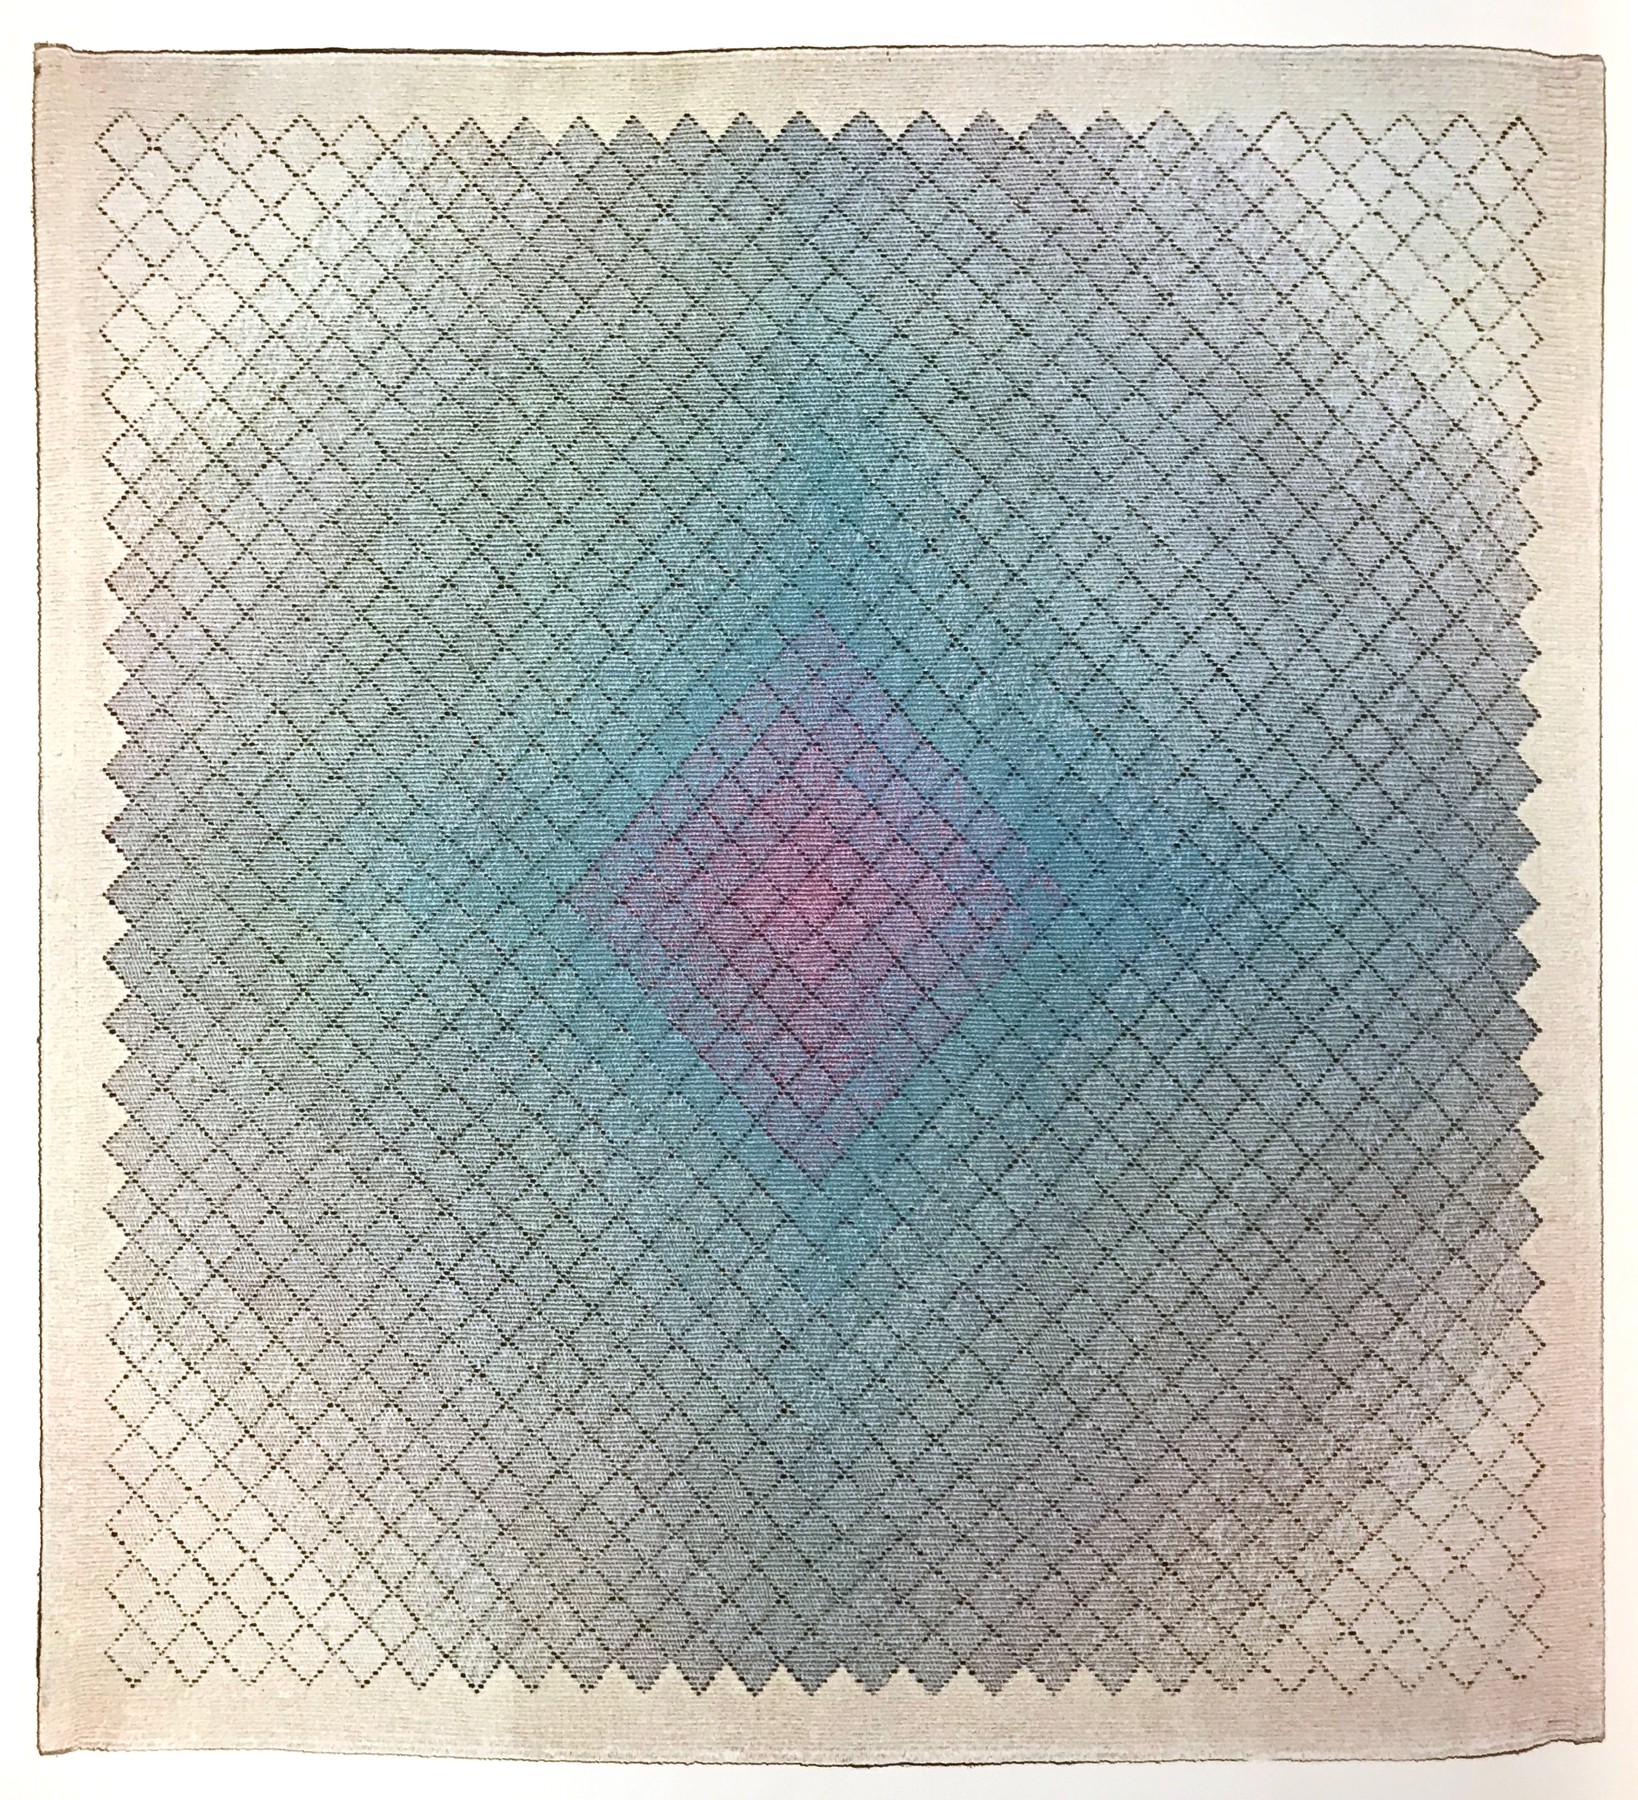 Moik Schiele, Blue Opalescent Tapestry, 1972